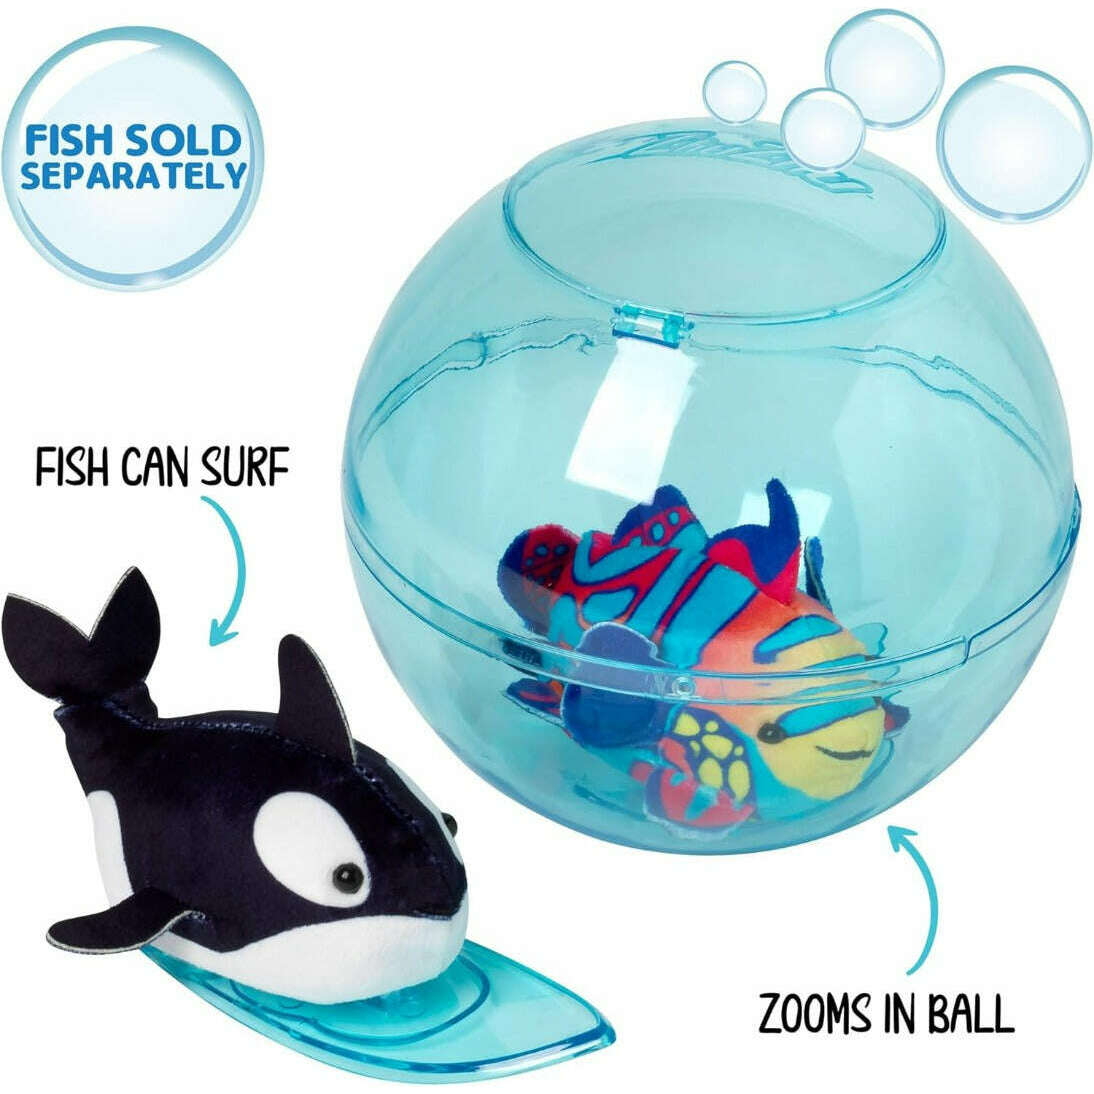 Toys N Tuck:Zhu Zhu Aquarium Bubble Ball & Surfboard,Zhu Zhu Pets